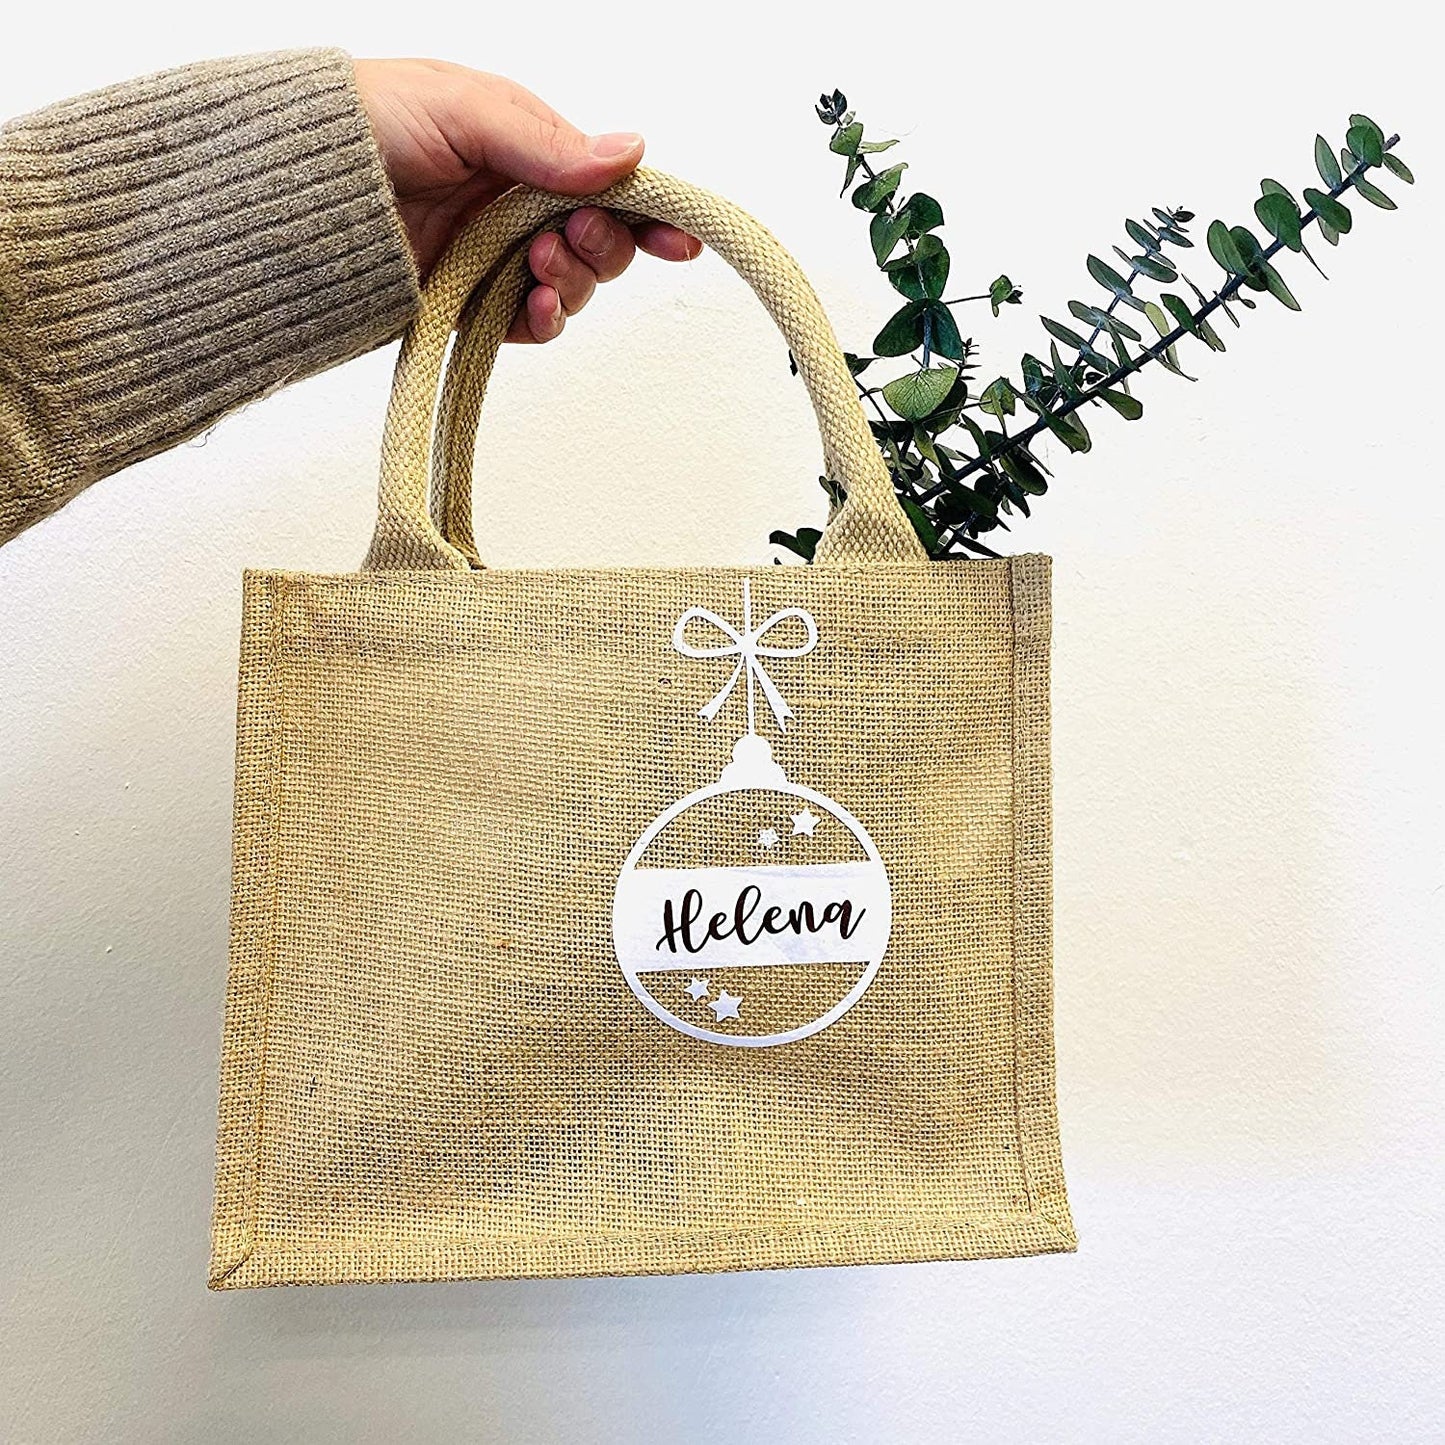 Jutebeutel Tasche aus Jute klein - personalisiert mit Weihnachtskugel und Namen - persönliche Geschenkverpackung - nachhaltig